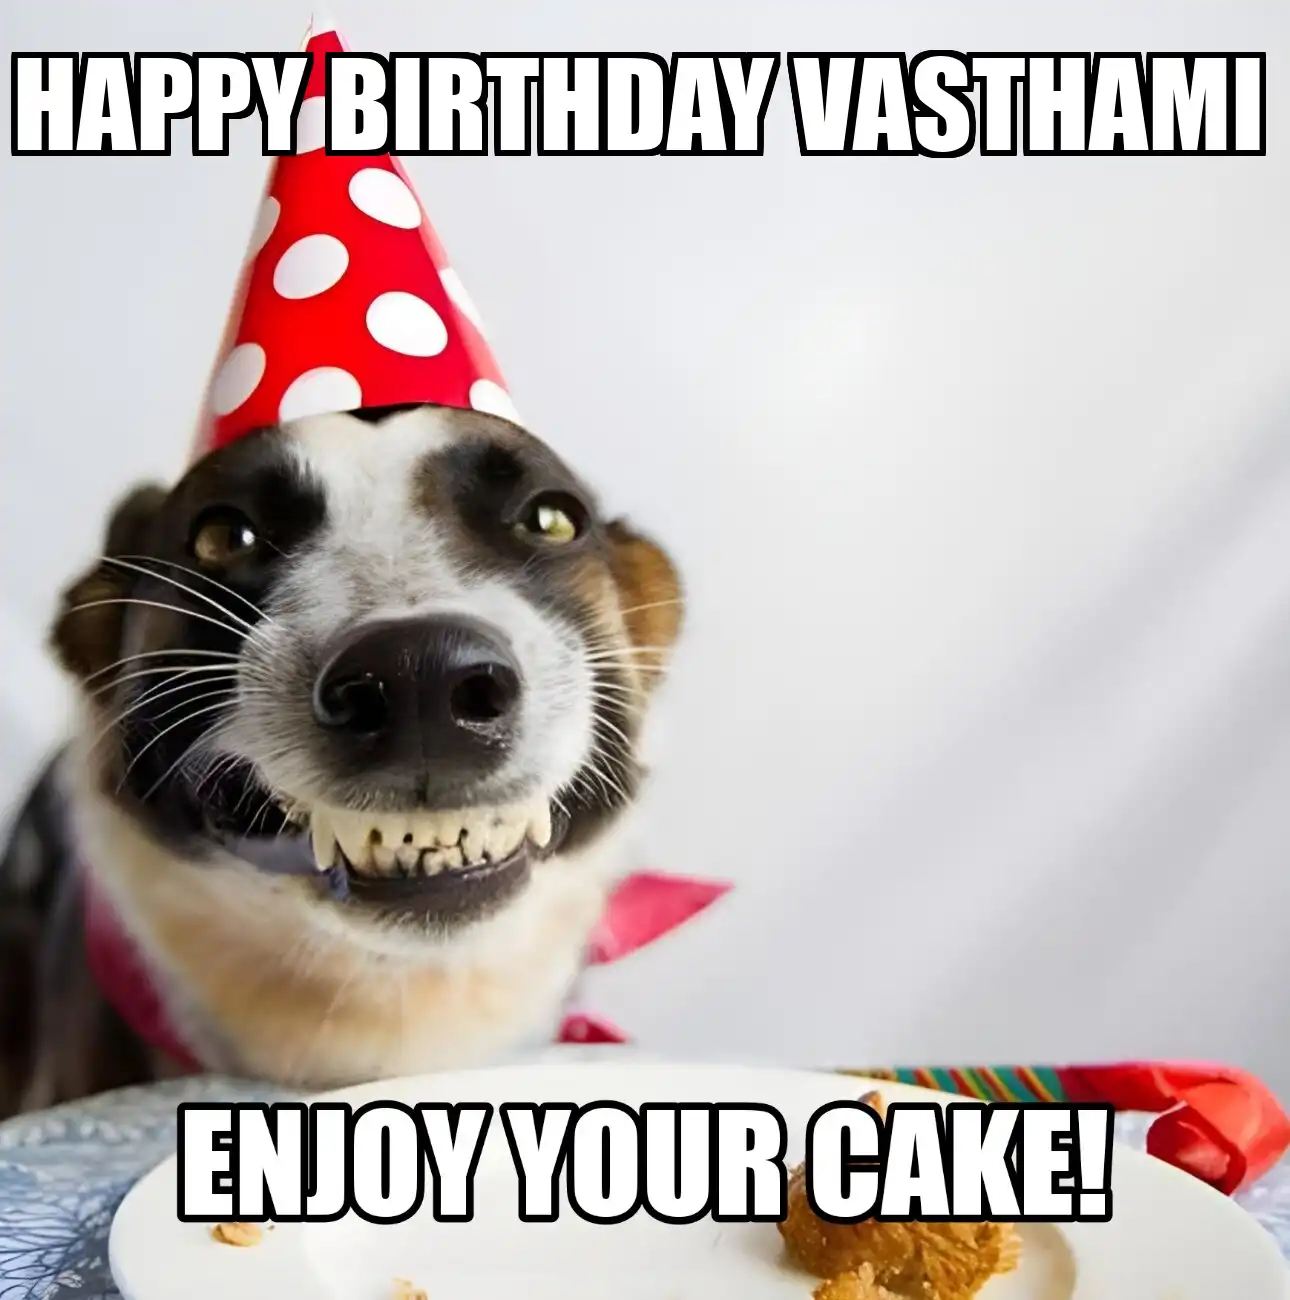 Happy Birthday Vasthami Enjoy Your Cake Dog Meme